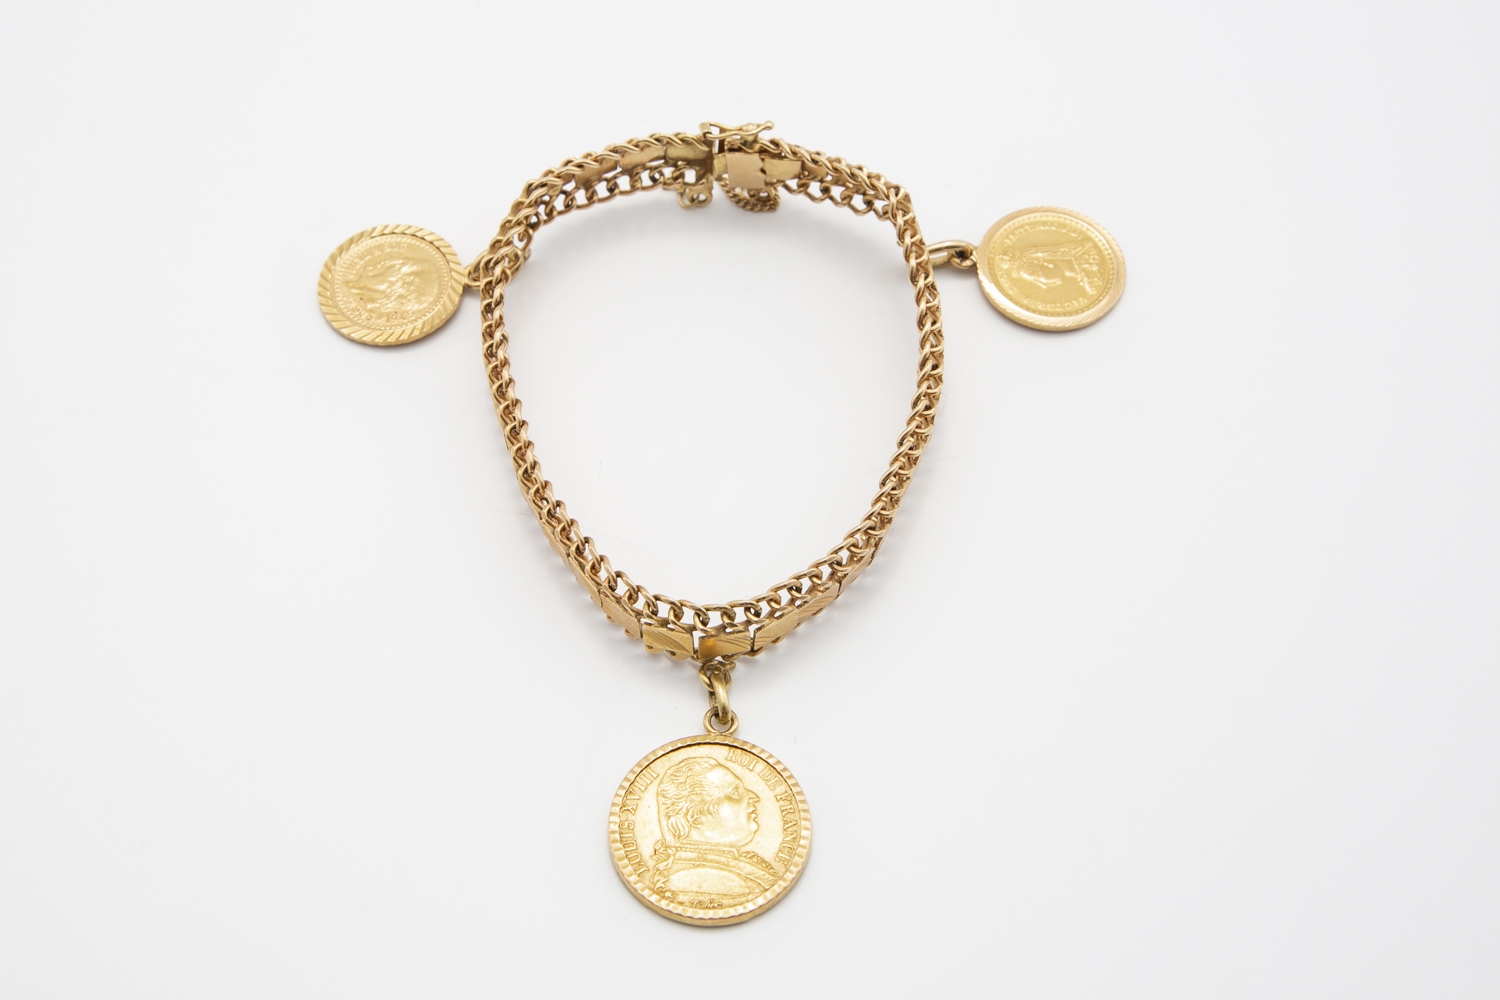 12 - Bracelet en or jaune 18K 750° avec 3 pièces en breloque. Adjugé 900€